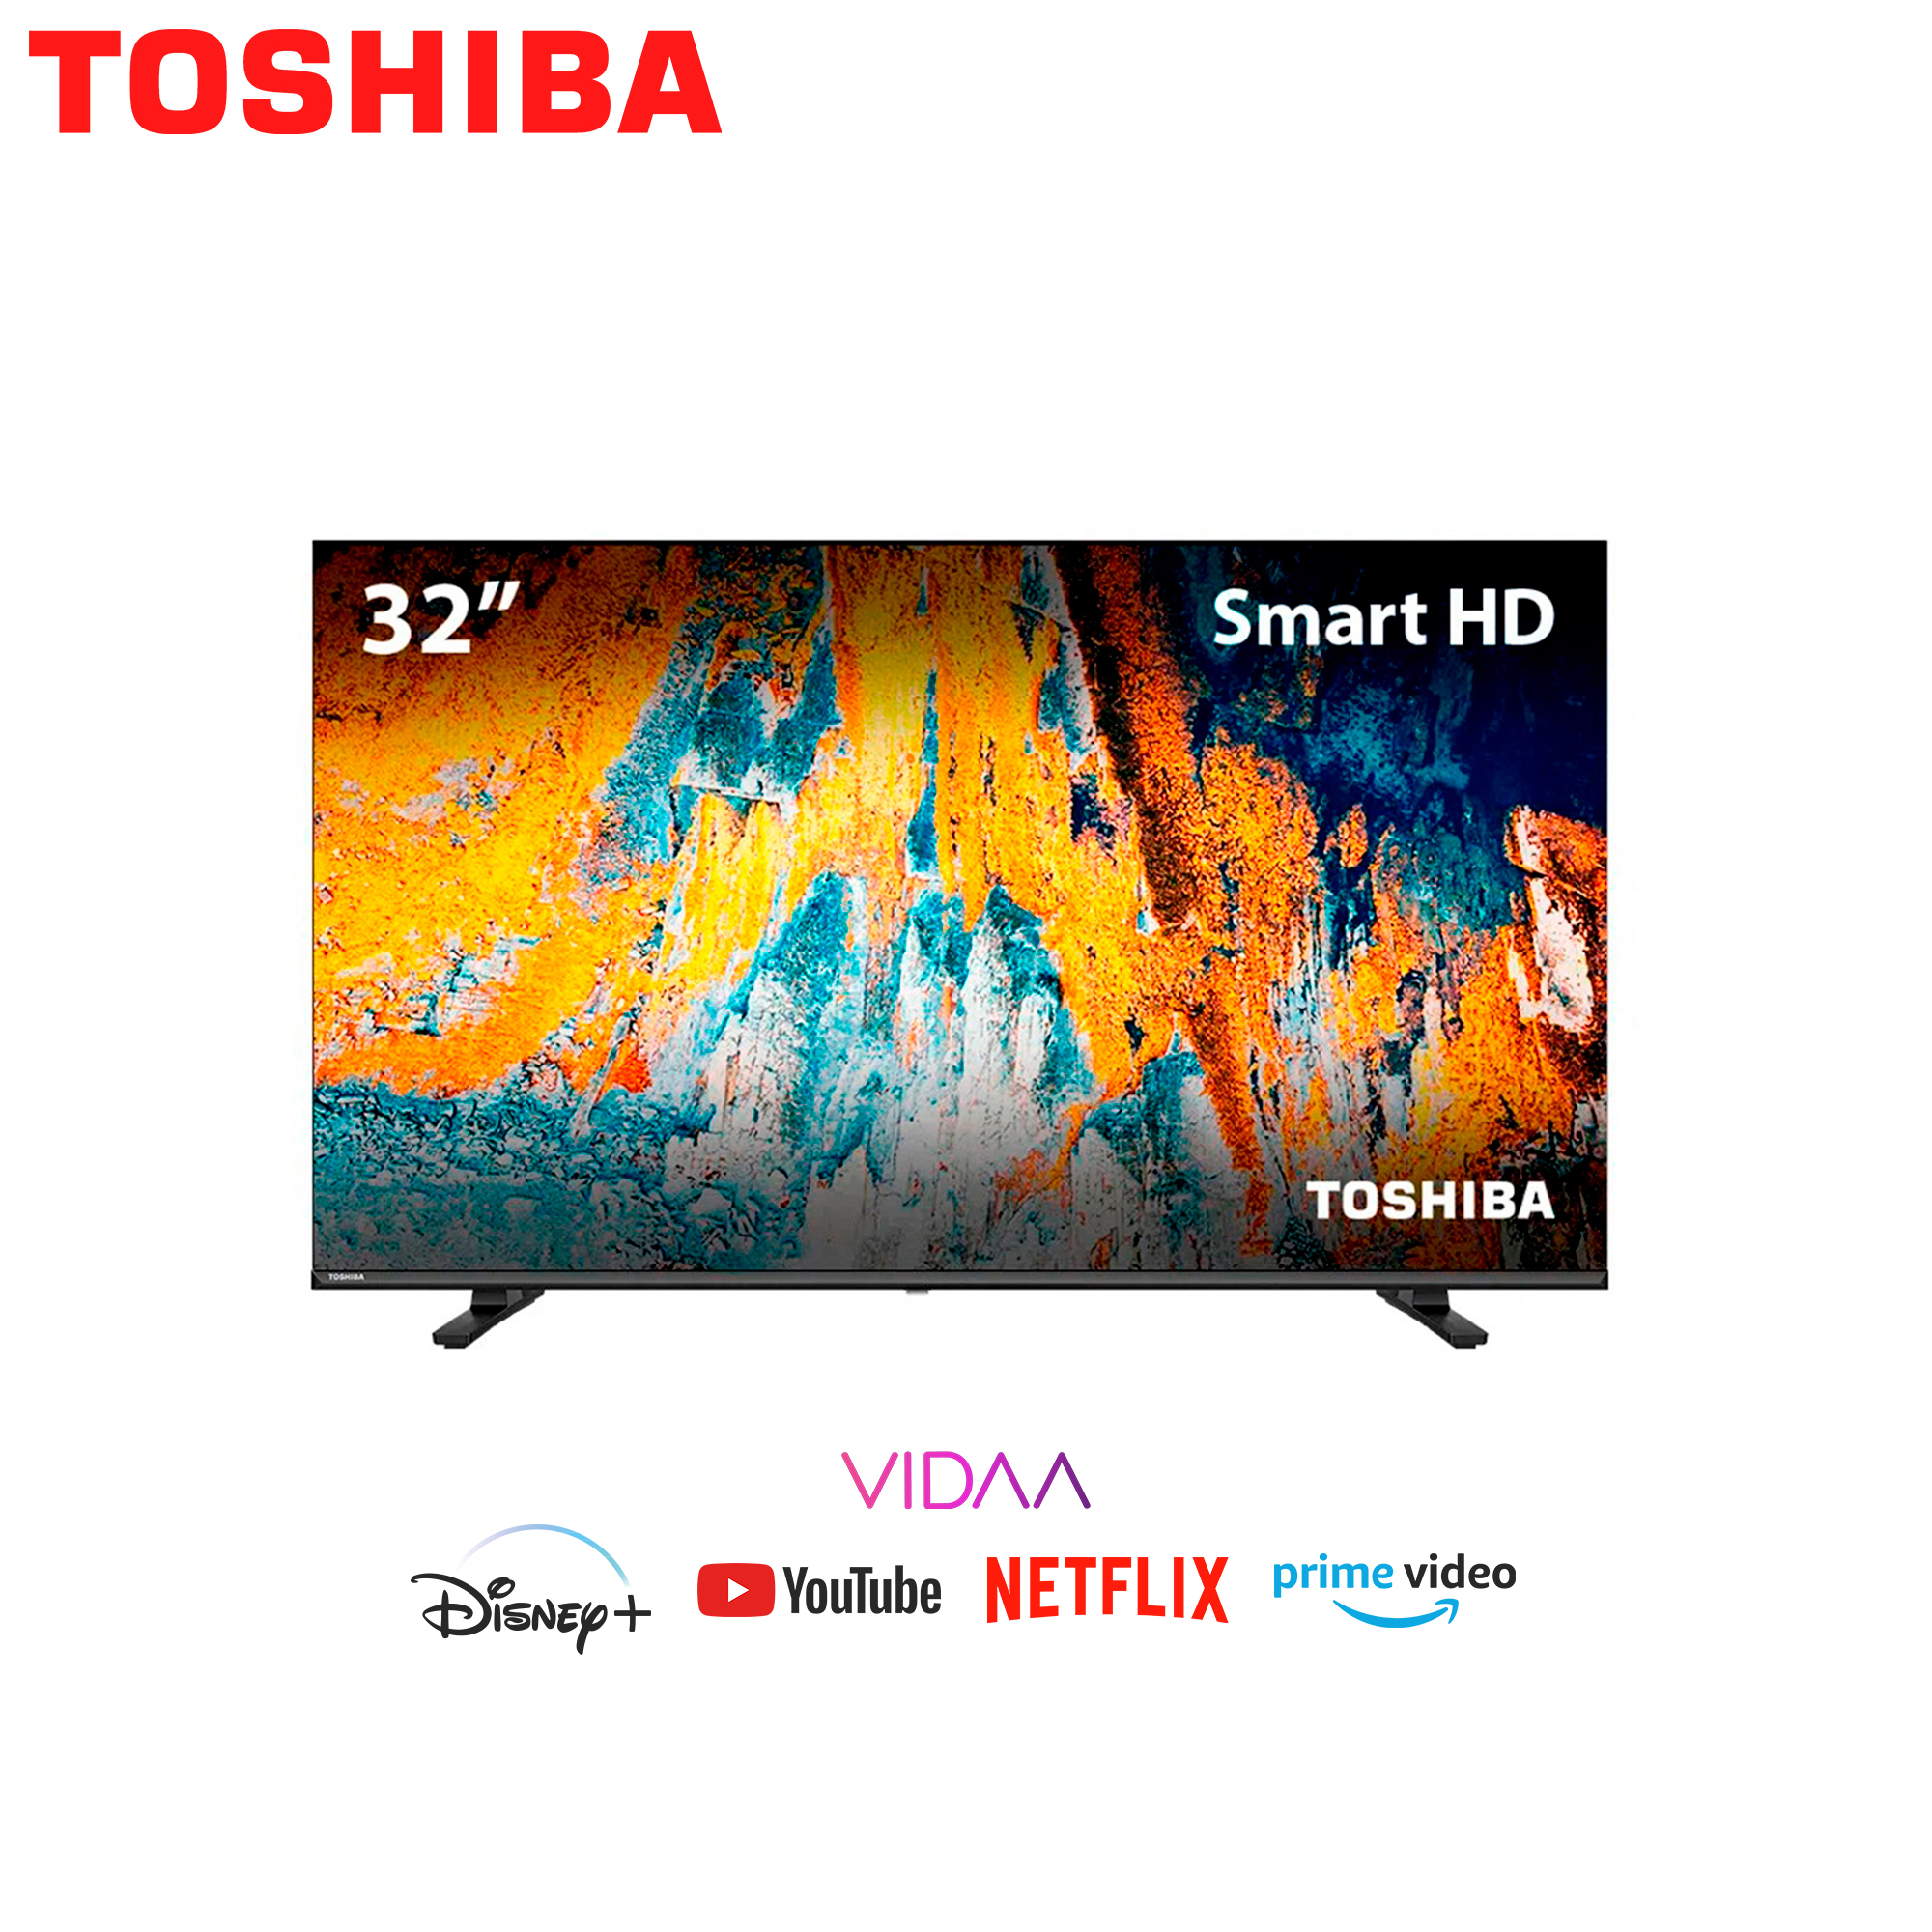 Smart TV 32 pulgadas TOSHIBA edición - Haanler Technology